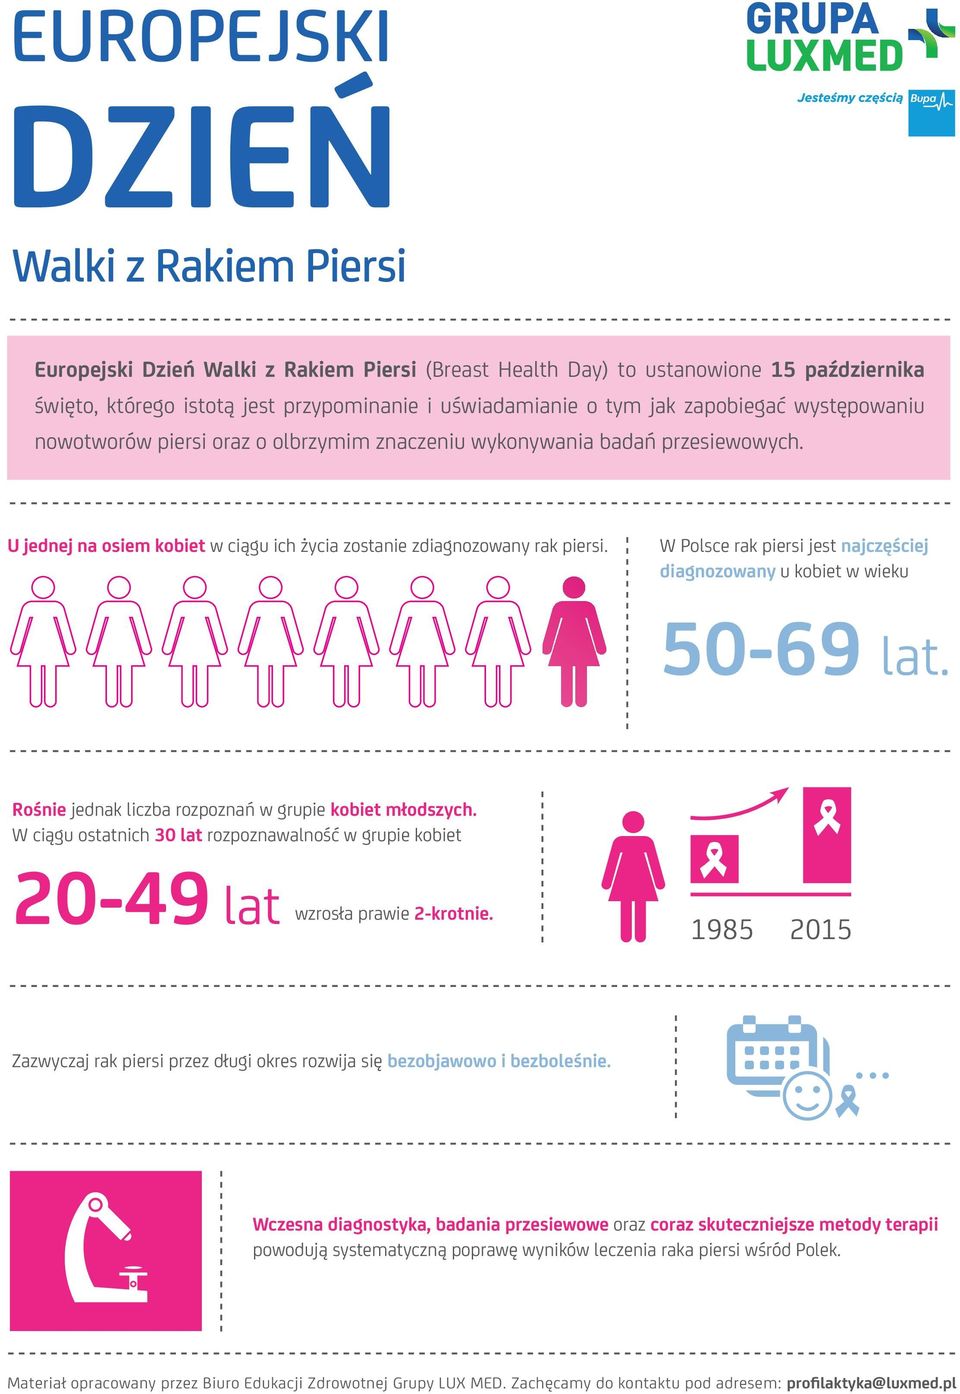 W Polsce rak piersi jest najczęściej diagnozowany u kobiet w wieku 50-69 lat. Rośnie jednak liczba rozpoznań w grupie kobiet młodszych.